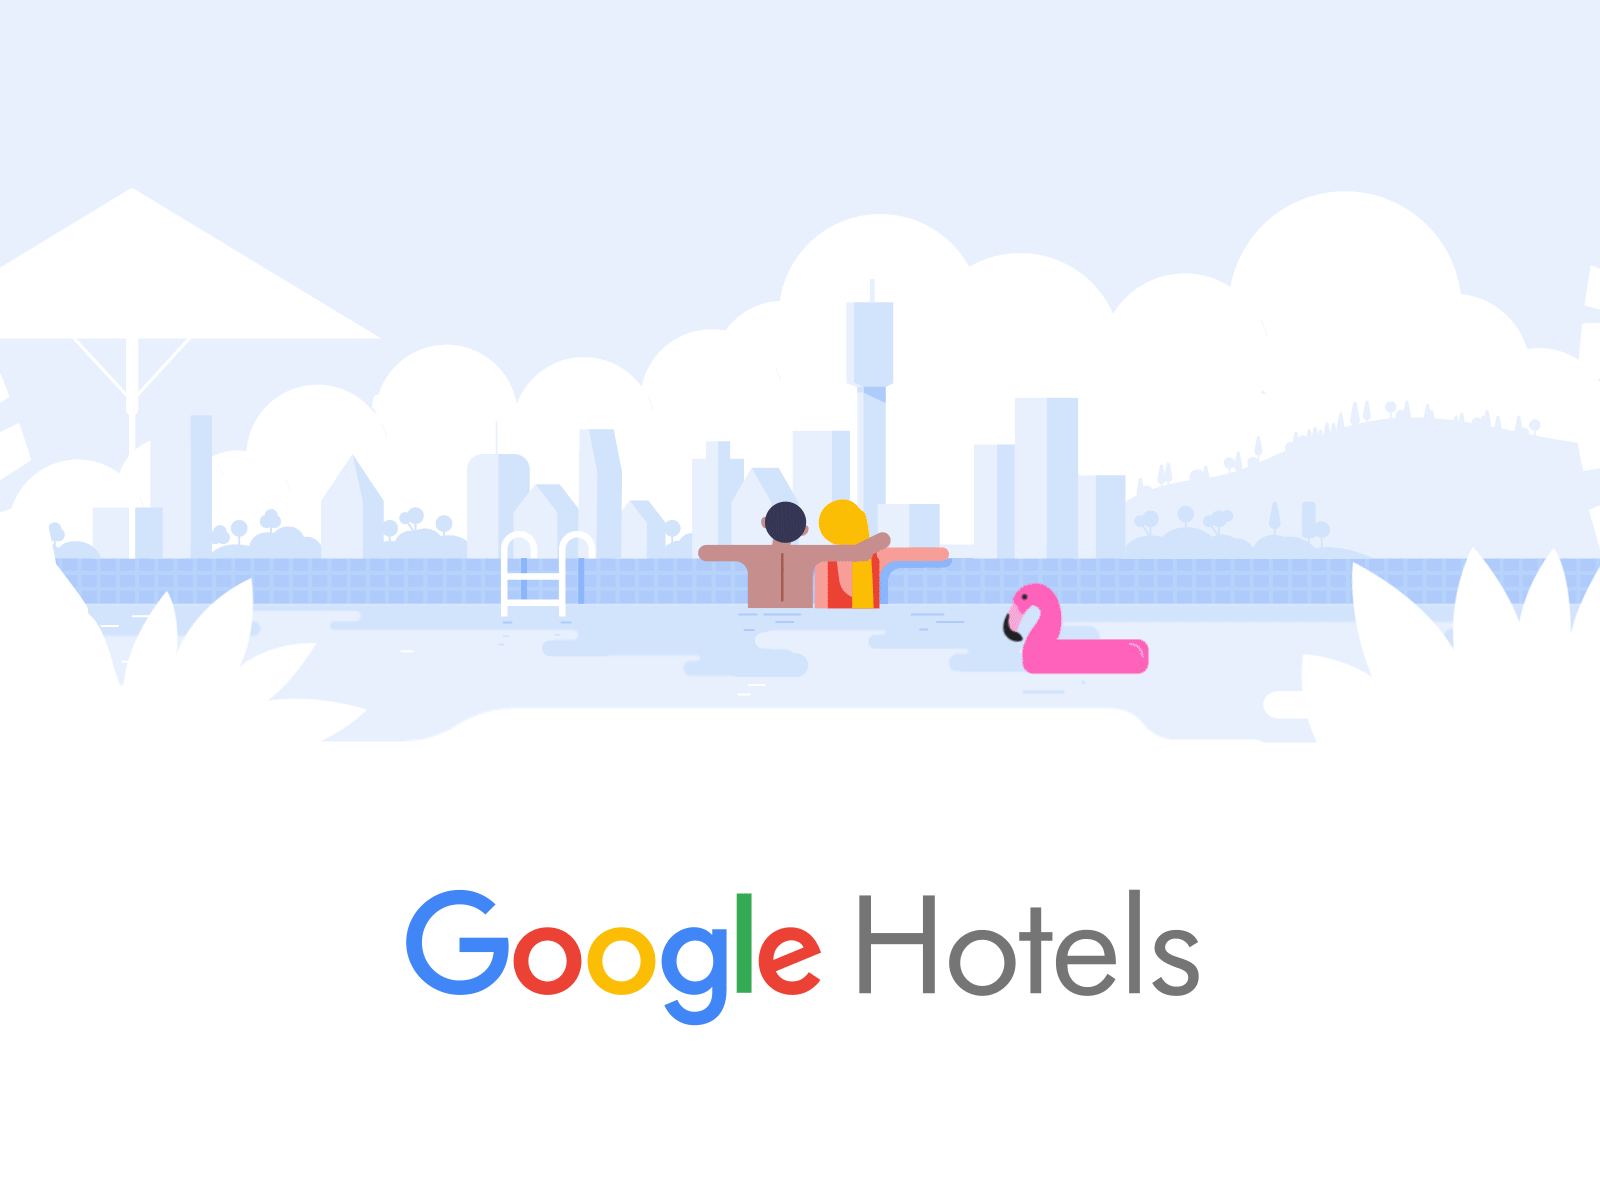 Google Hotels 2d after effects animation brand animation brand design character animation design flamingo google google design google hotels hotels illustration motion design